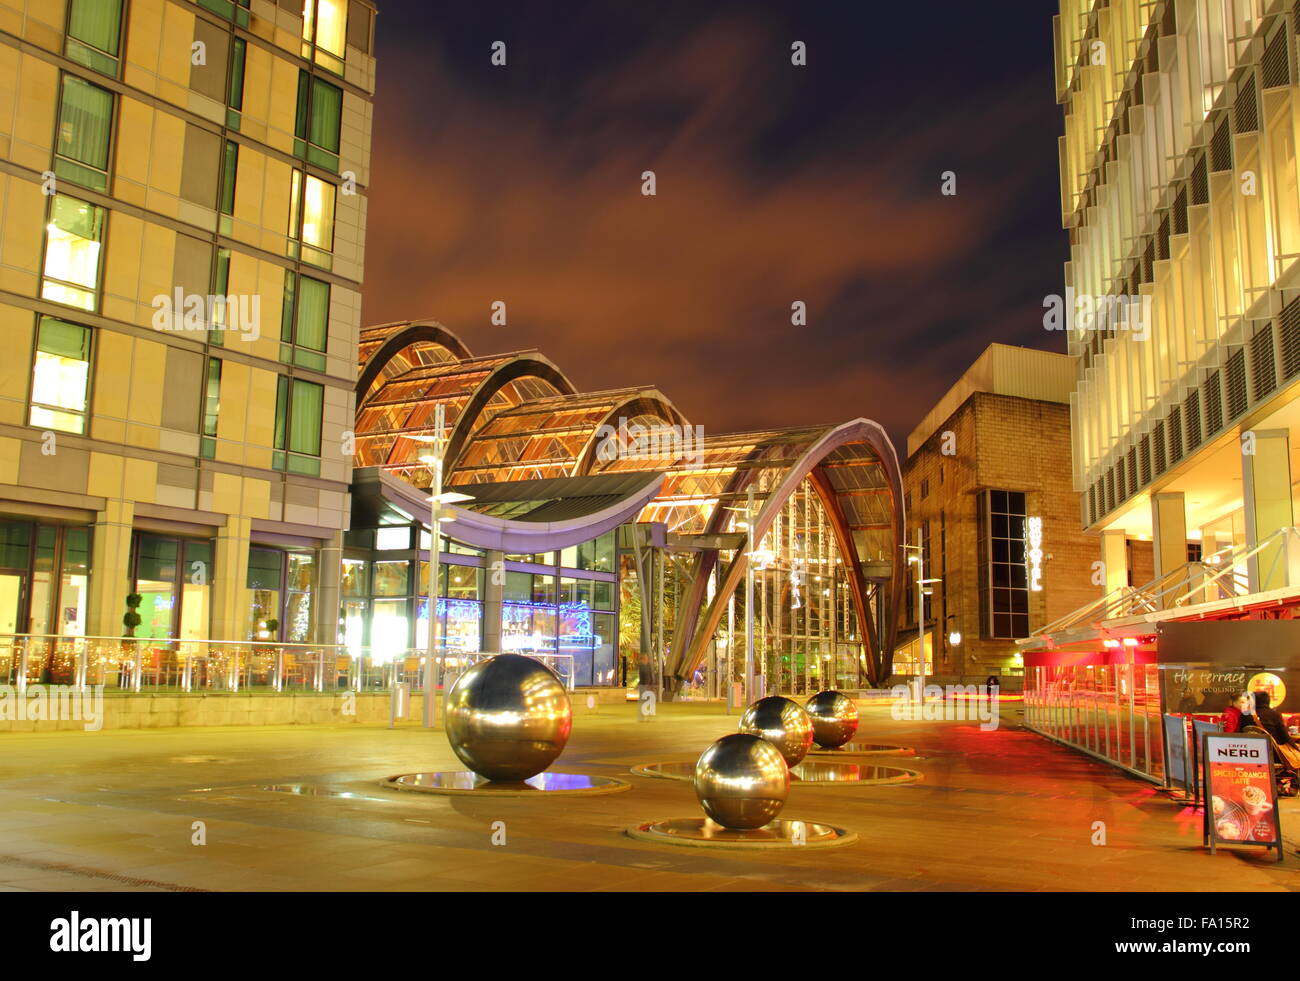 Millennium Square in Sheffield Stadtzentrum, Blick auf den Wintergarten Gewächshaus (L) und angrenzenden St. Pauls Hotel und Spa, Großbritannien Stockfoto